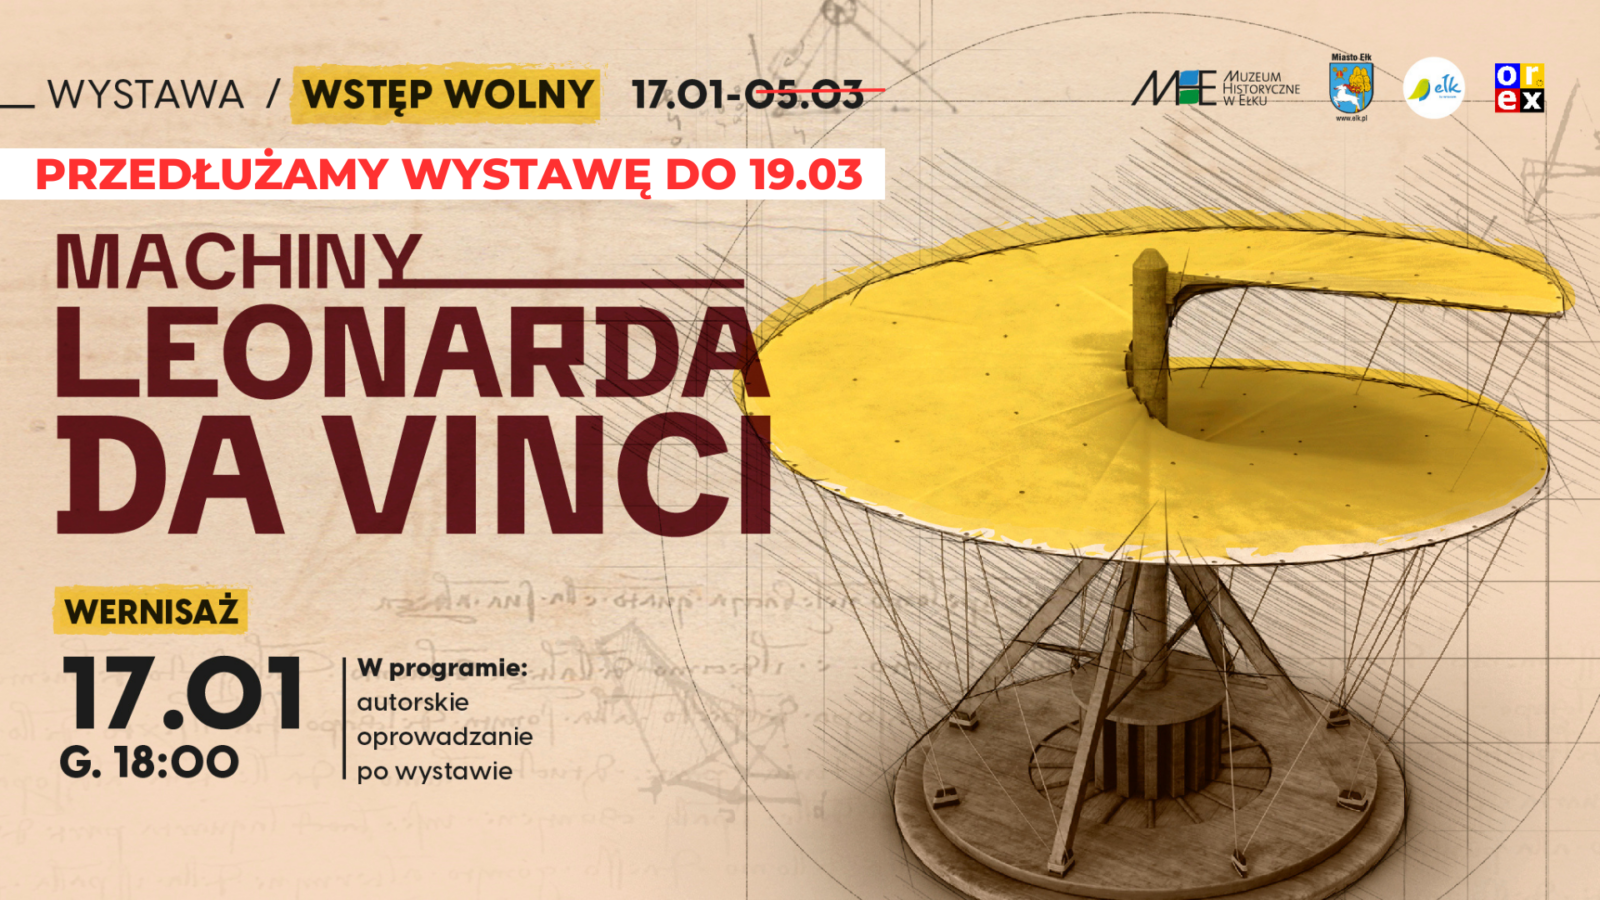 baner promujący wystawę "Machiny Leonarda da Vinci" z informacją o przedłużeniu możliwości zwiedzania do 19 marca włącznie.